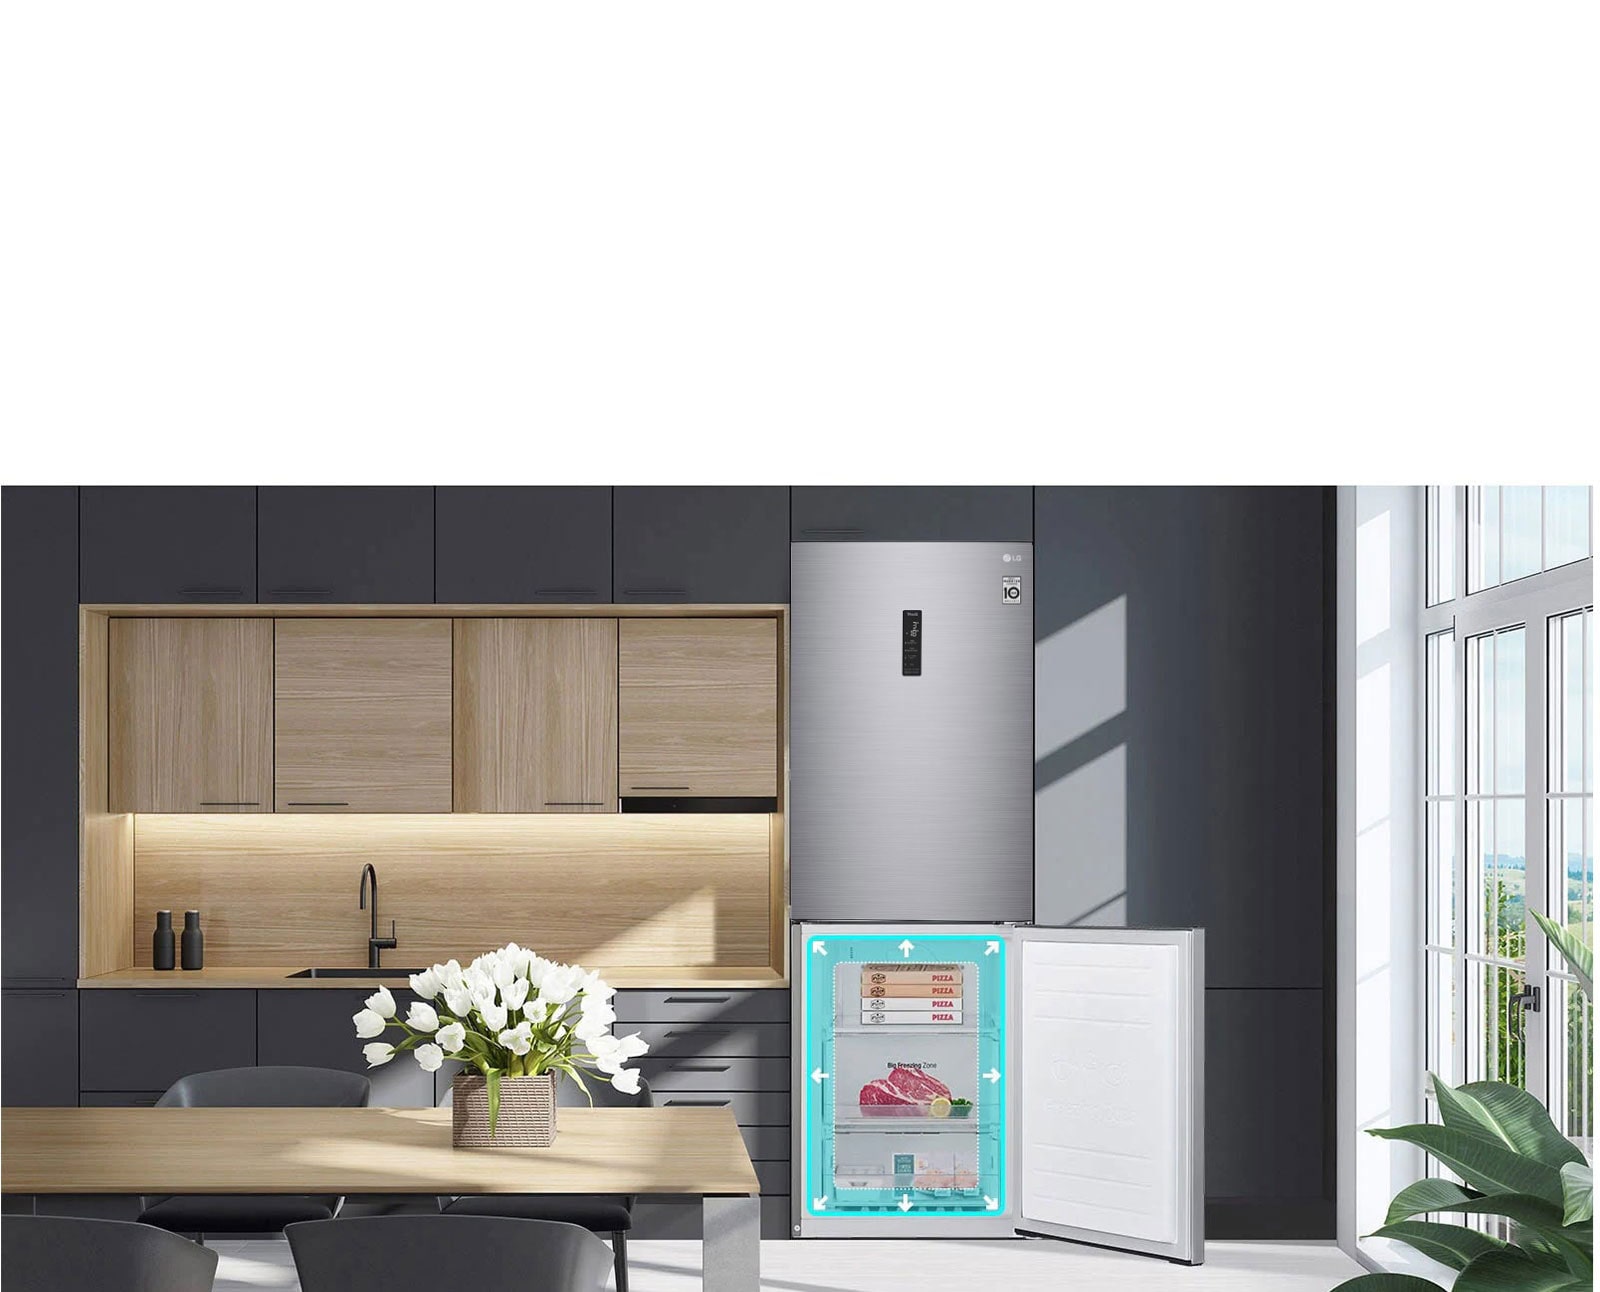 A hűtőszekrény látható a konyhában lévő berendezésekkel. A hűtőszekrény alsó ajtaja nyitott és tele van ételekkel. A nyilakkal ellátott neon négyzet a fagyasztótérben azt mutatja, hogy több hely van benne.